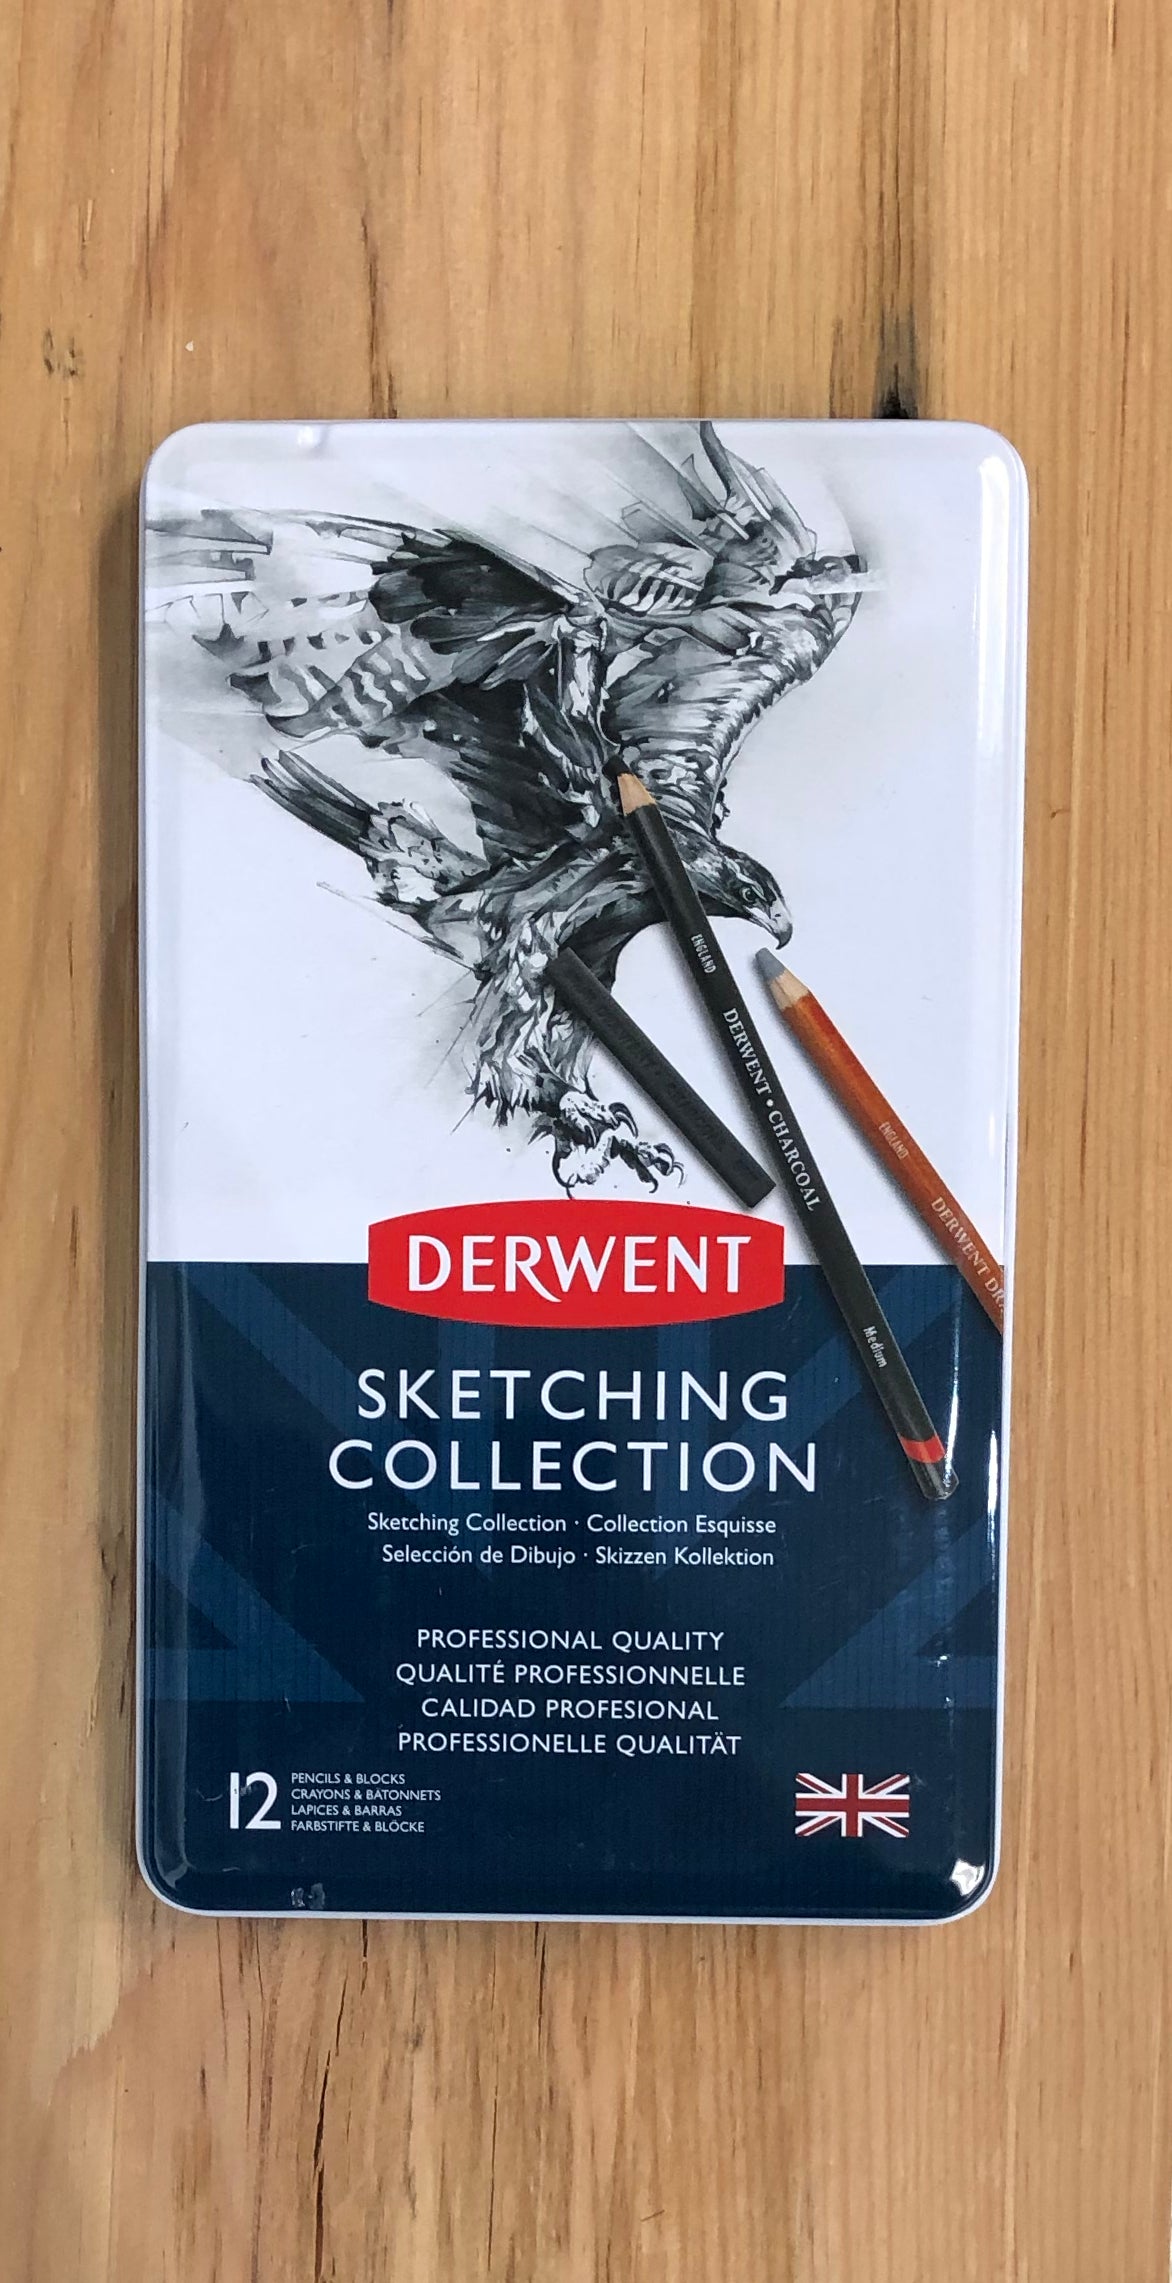 Derwent Sketch Collection, lata de metal - juego de 12 piezas